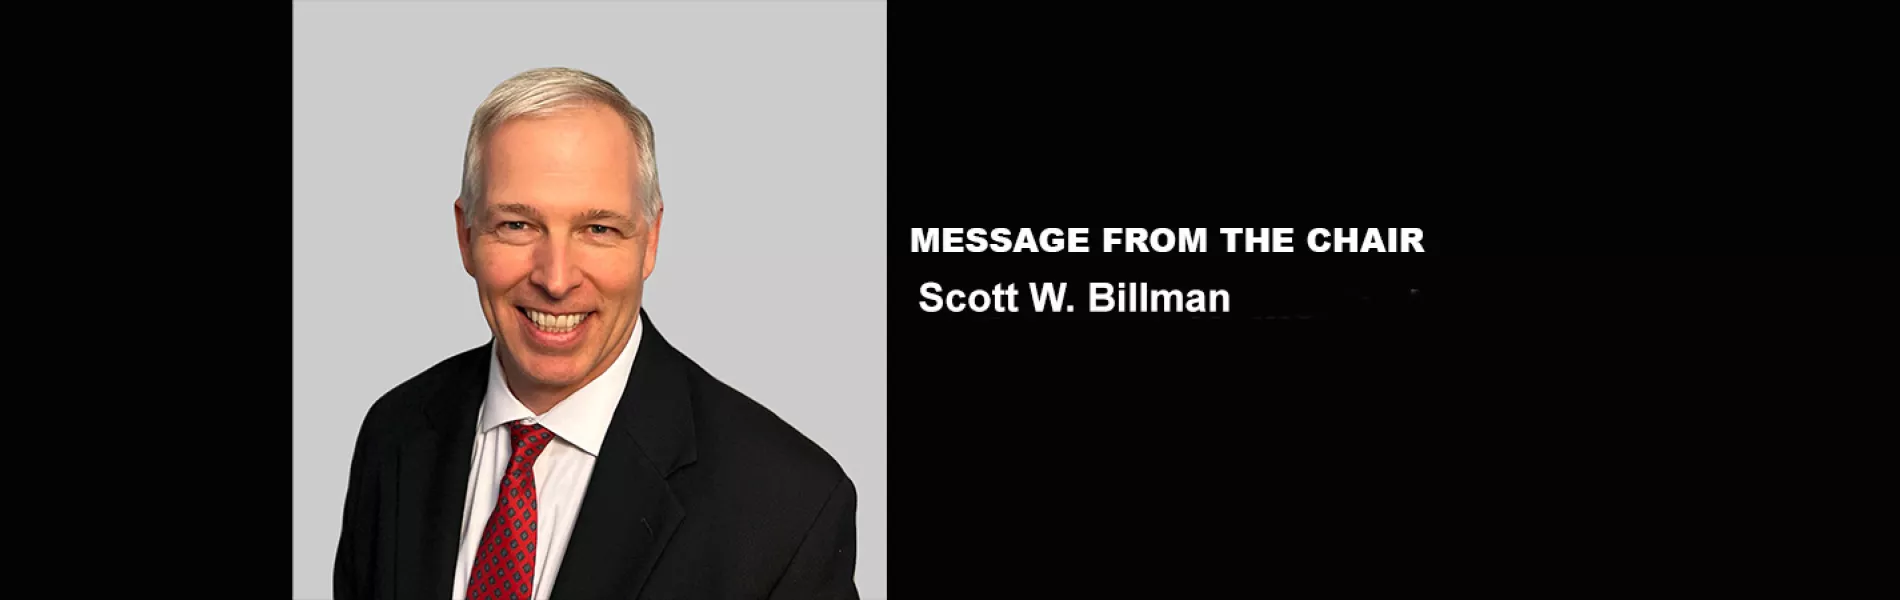 Scott W. Billman